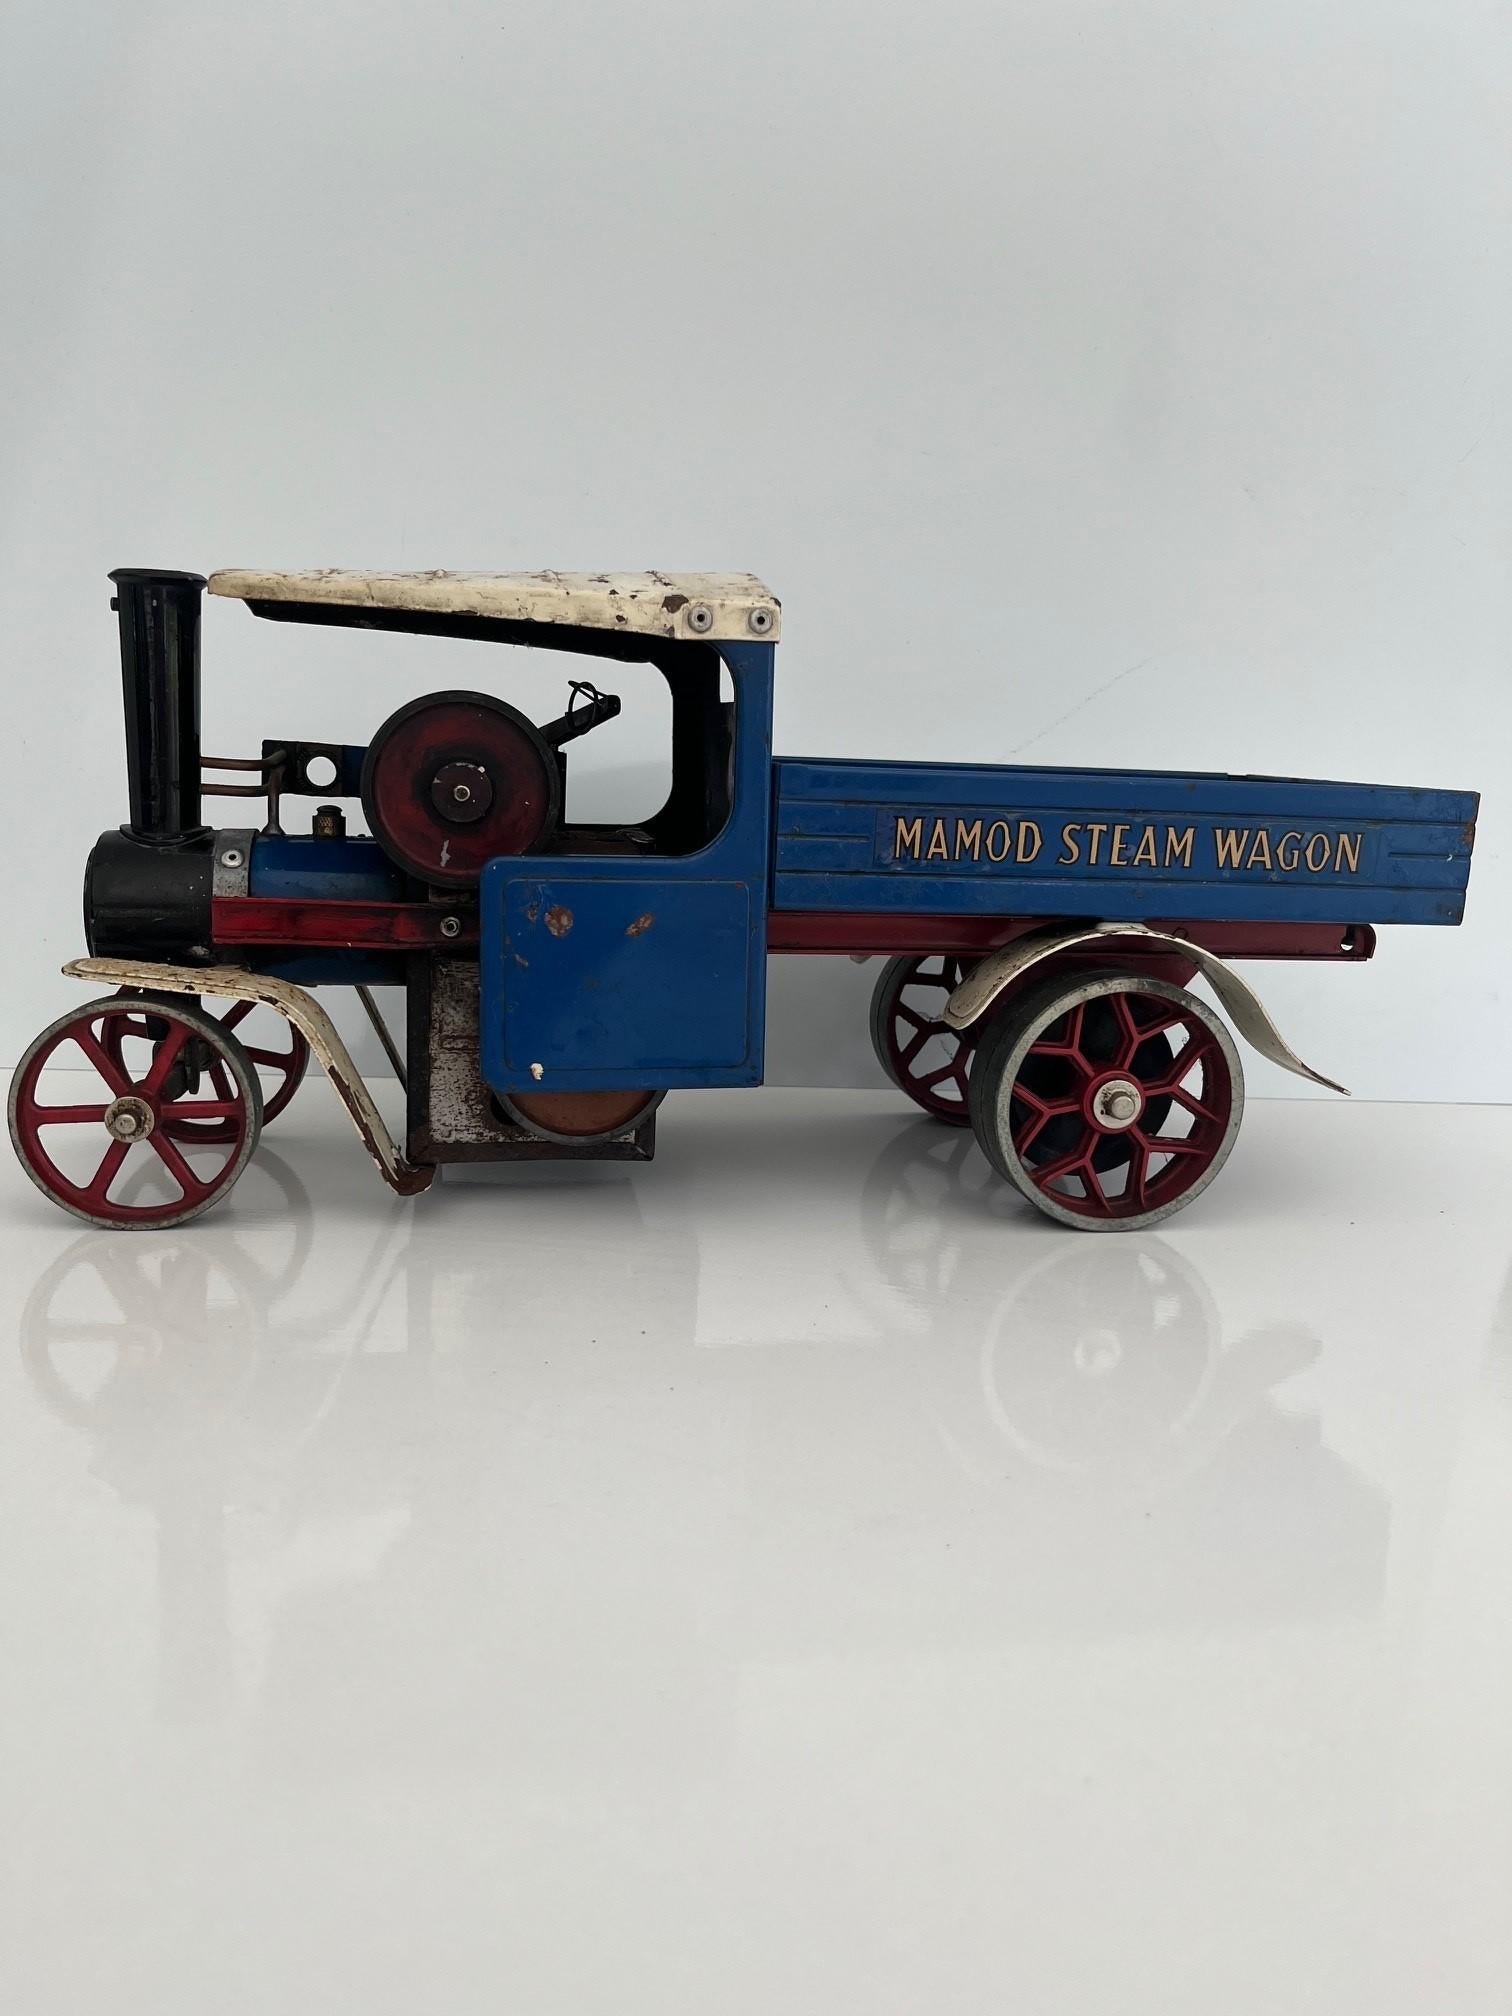 Une très belle maquette de machine à vapeur ancienne de fabrication britannique.  La pièce a une bonne échelle et une belle patine vintage, idéale comme pièce d'art ou modèle d'étagère.
L'objet date des années 1970 environ, époque à laquelle ces